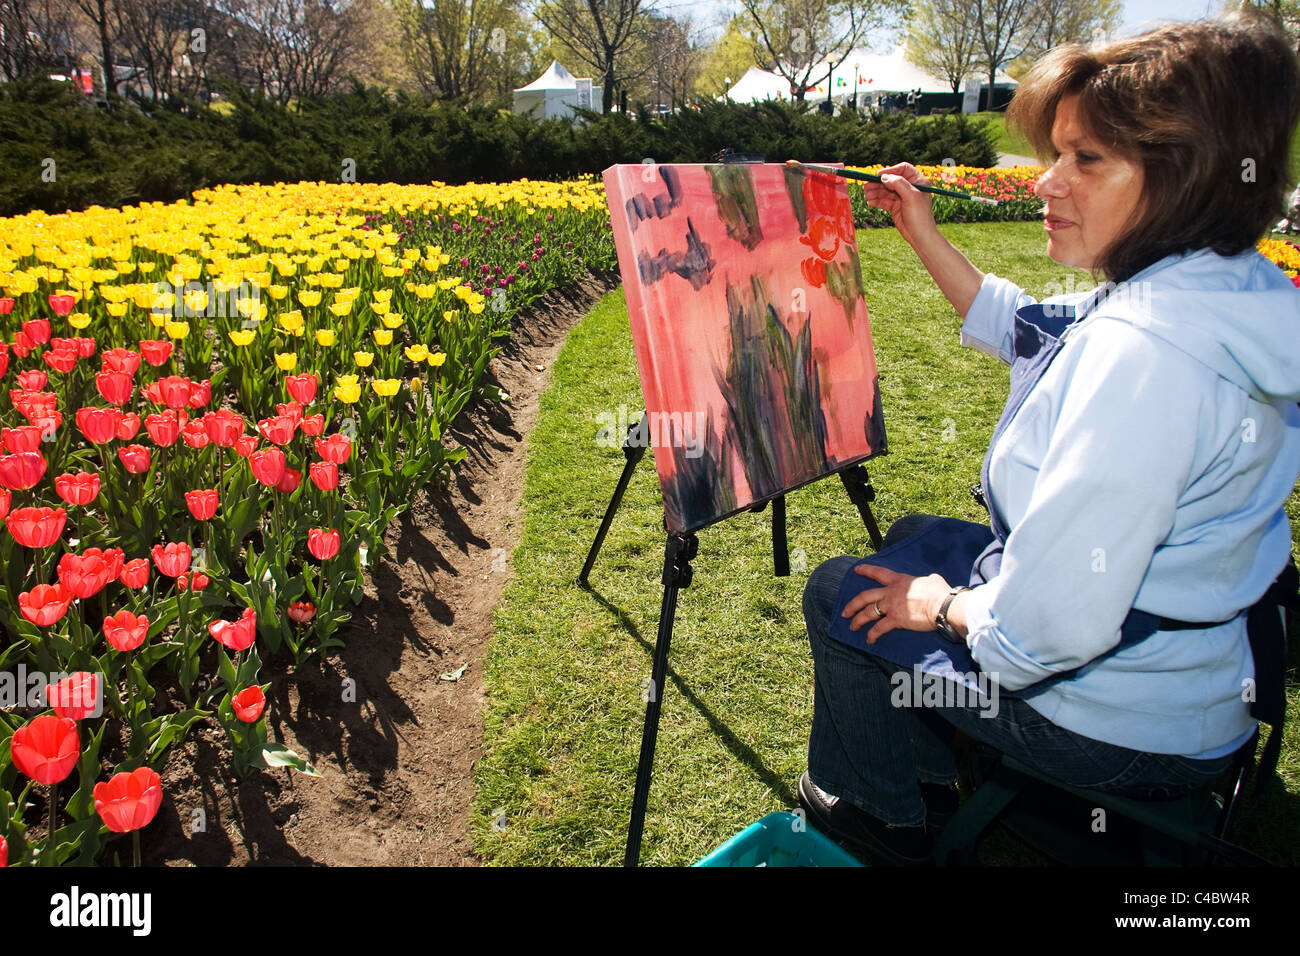 Mai 2011, l'artiste d'Ottawa Lina Yachnin travaille sur une peinture à l'huile au cours de la nationale 2011 Festival des tulipes à Ottawa Ontario Canada. Banque D'Images